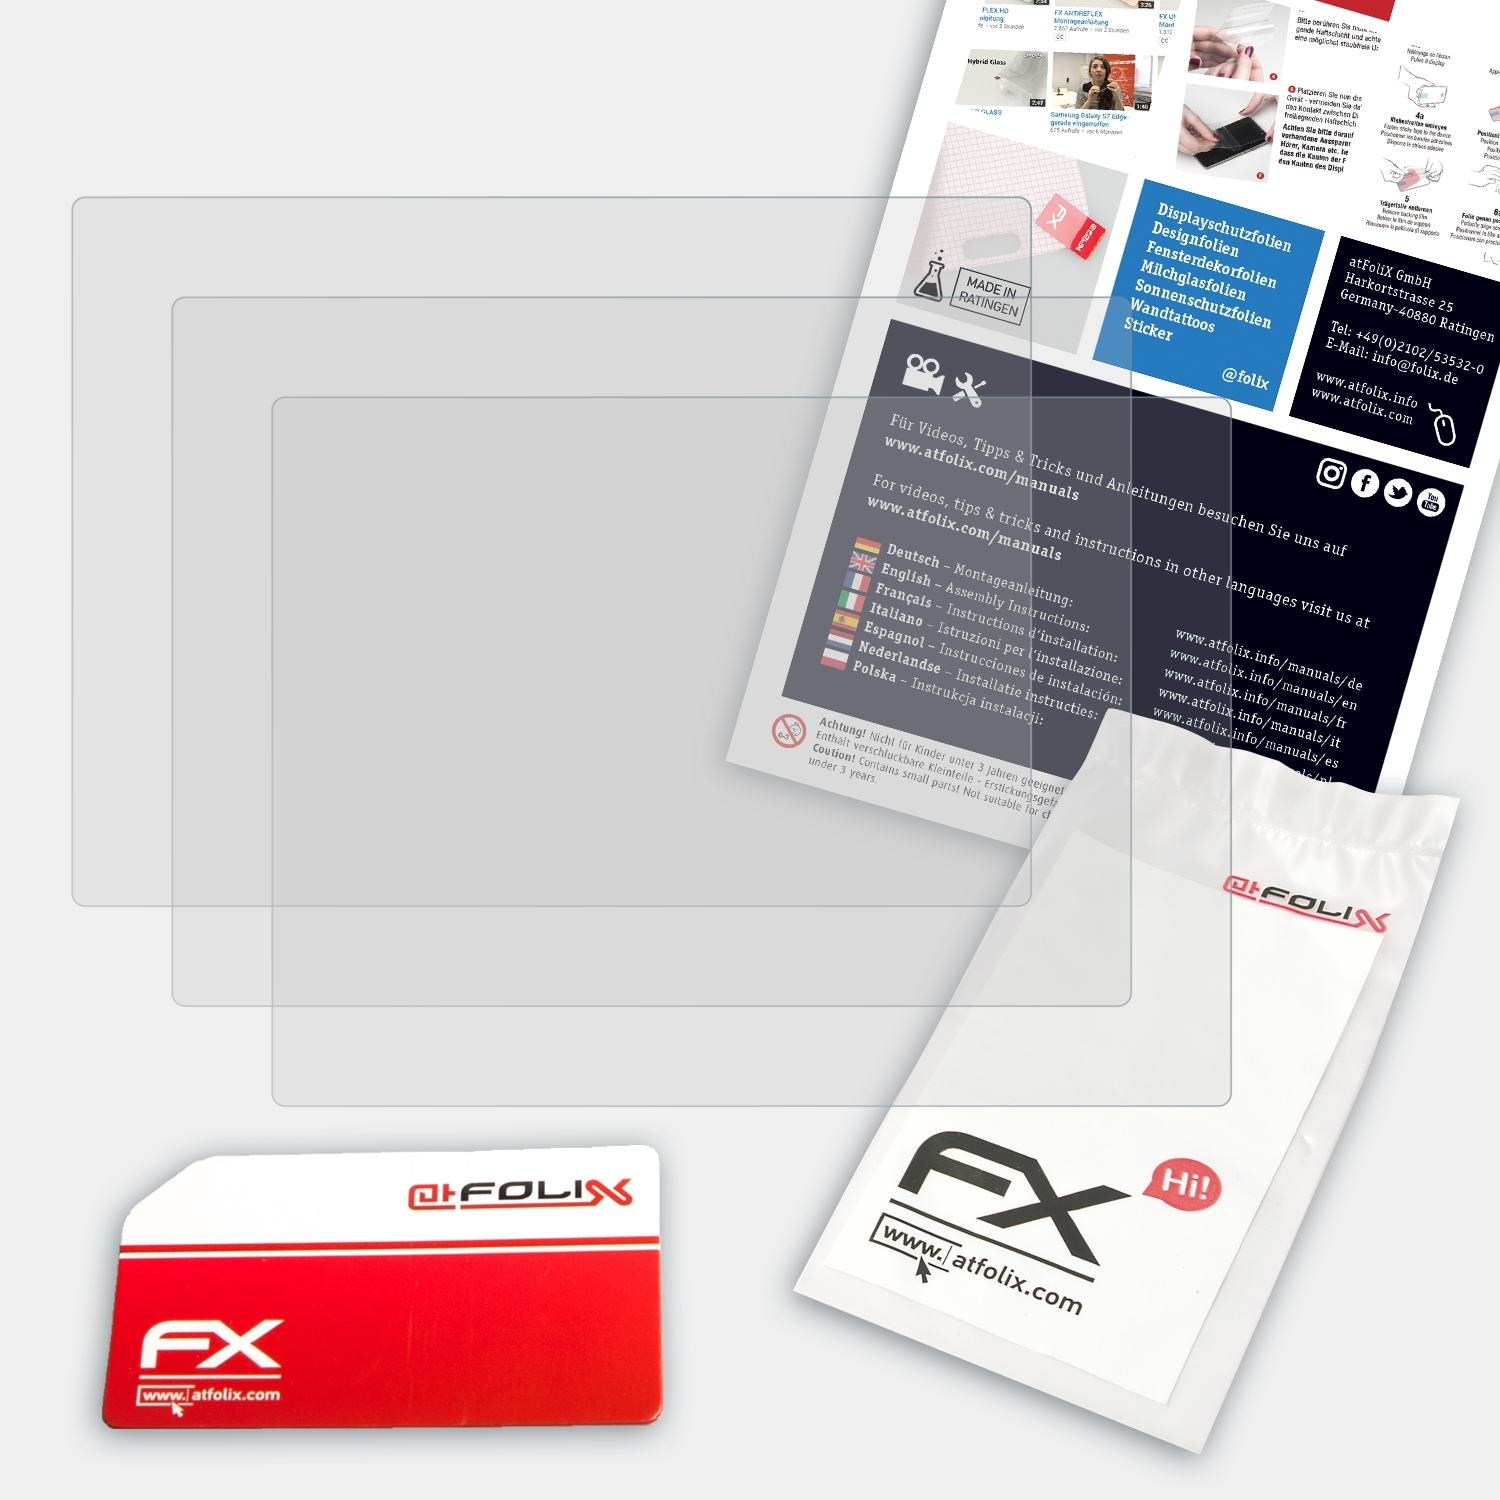 ATFOLIX 3x FX-Antireflex Displayschutz(für DSC-HX90) Sony